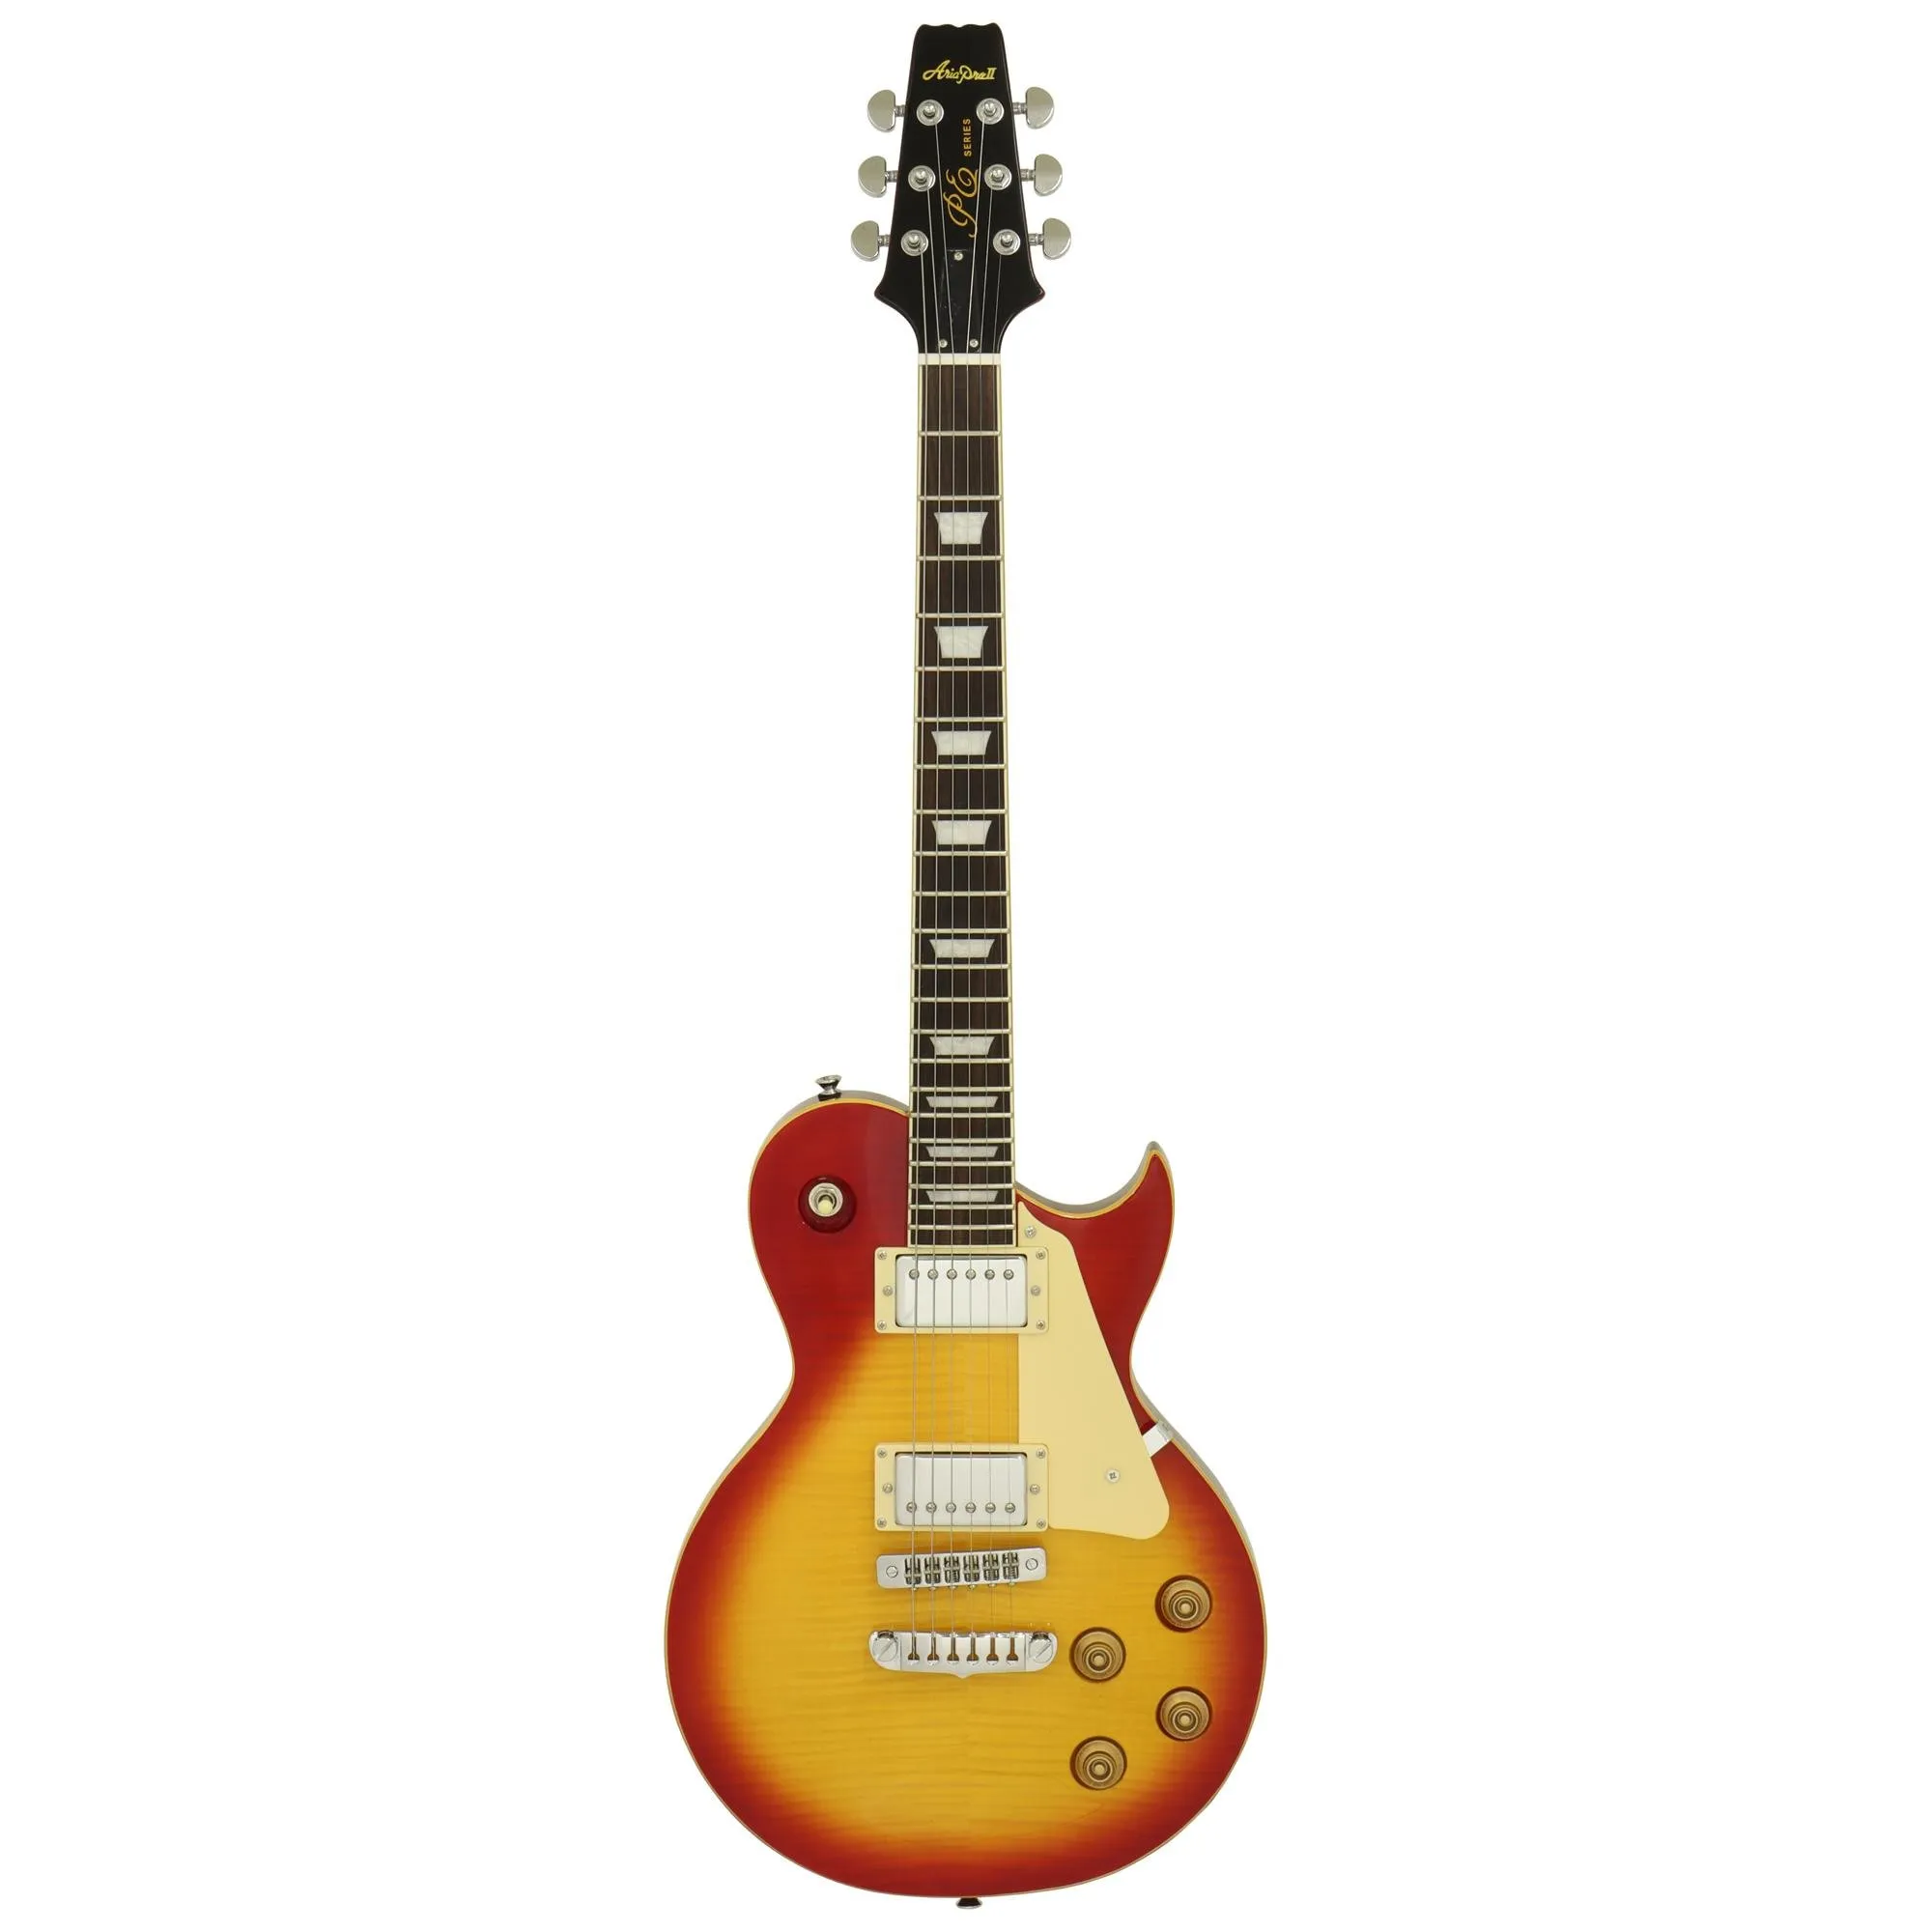 Guitarra Aria Pro II PE-590STD Aged Cherry Sunburst por 3.011,00 à vista no boleto/pix ou parcele em até 12x sem juros. Compre na loja Mundomax!